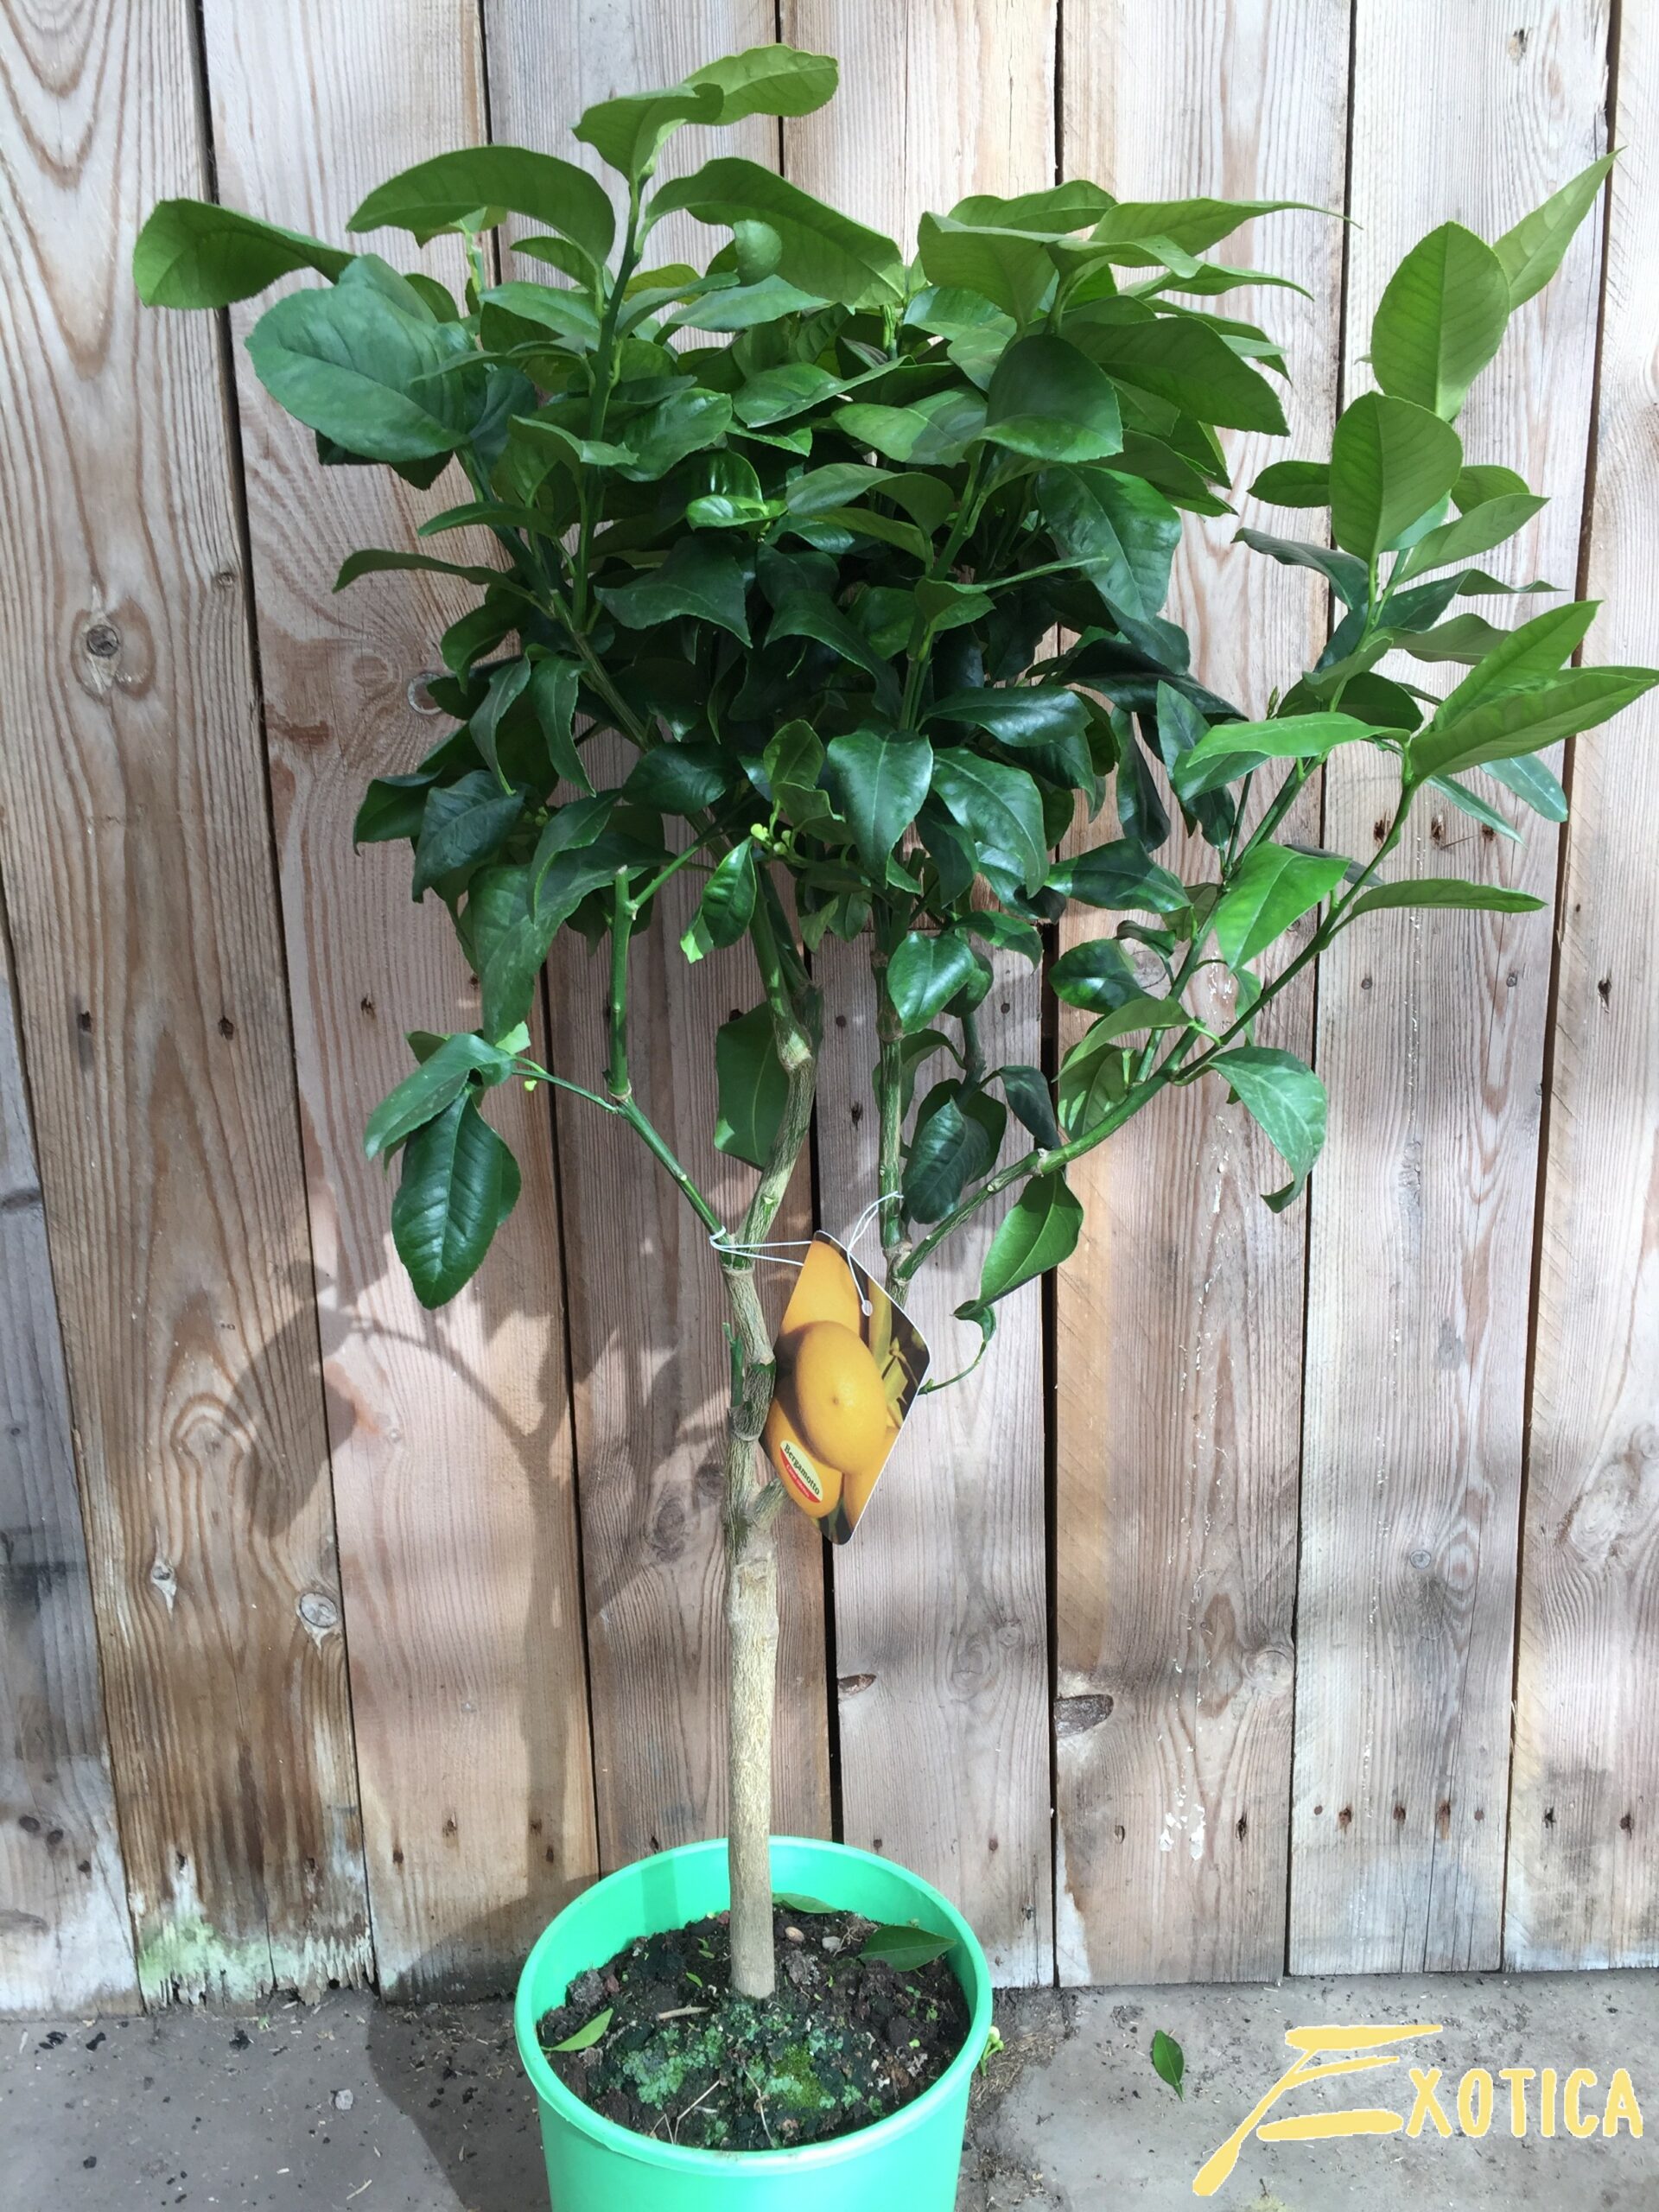 knelpunt Ondergeschikt Ontmoedigen Citrus Bergamia (Bergamot) – Plantencentrum Exotica